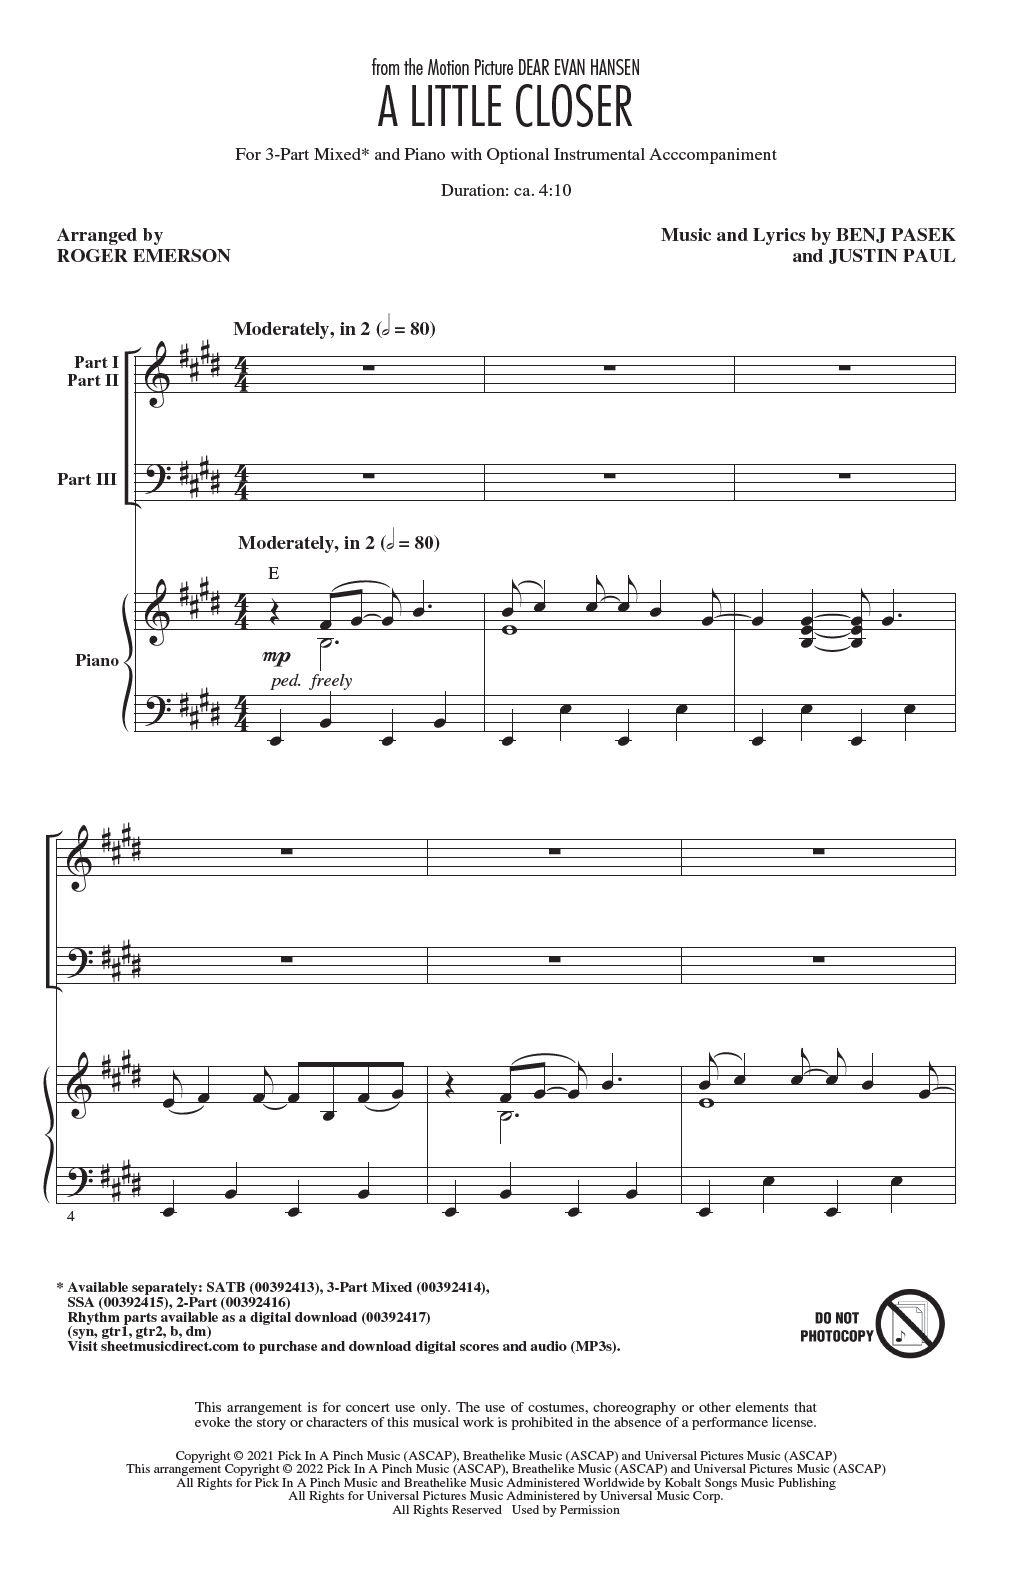 Pasek & Paul A Little Closer (from Dear Evan Hansen) (arr. Roger Emerson) sheet music notes and chords arranged for SSA Choir